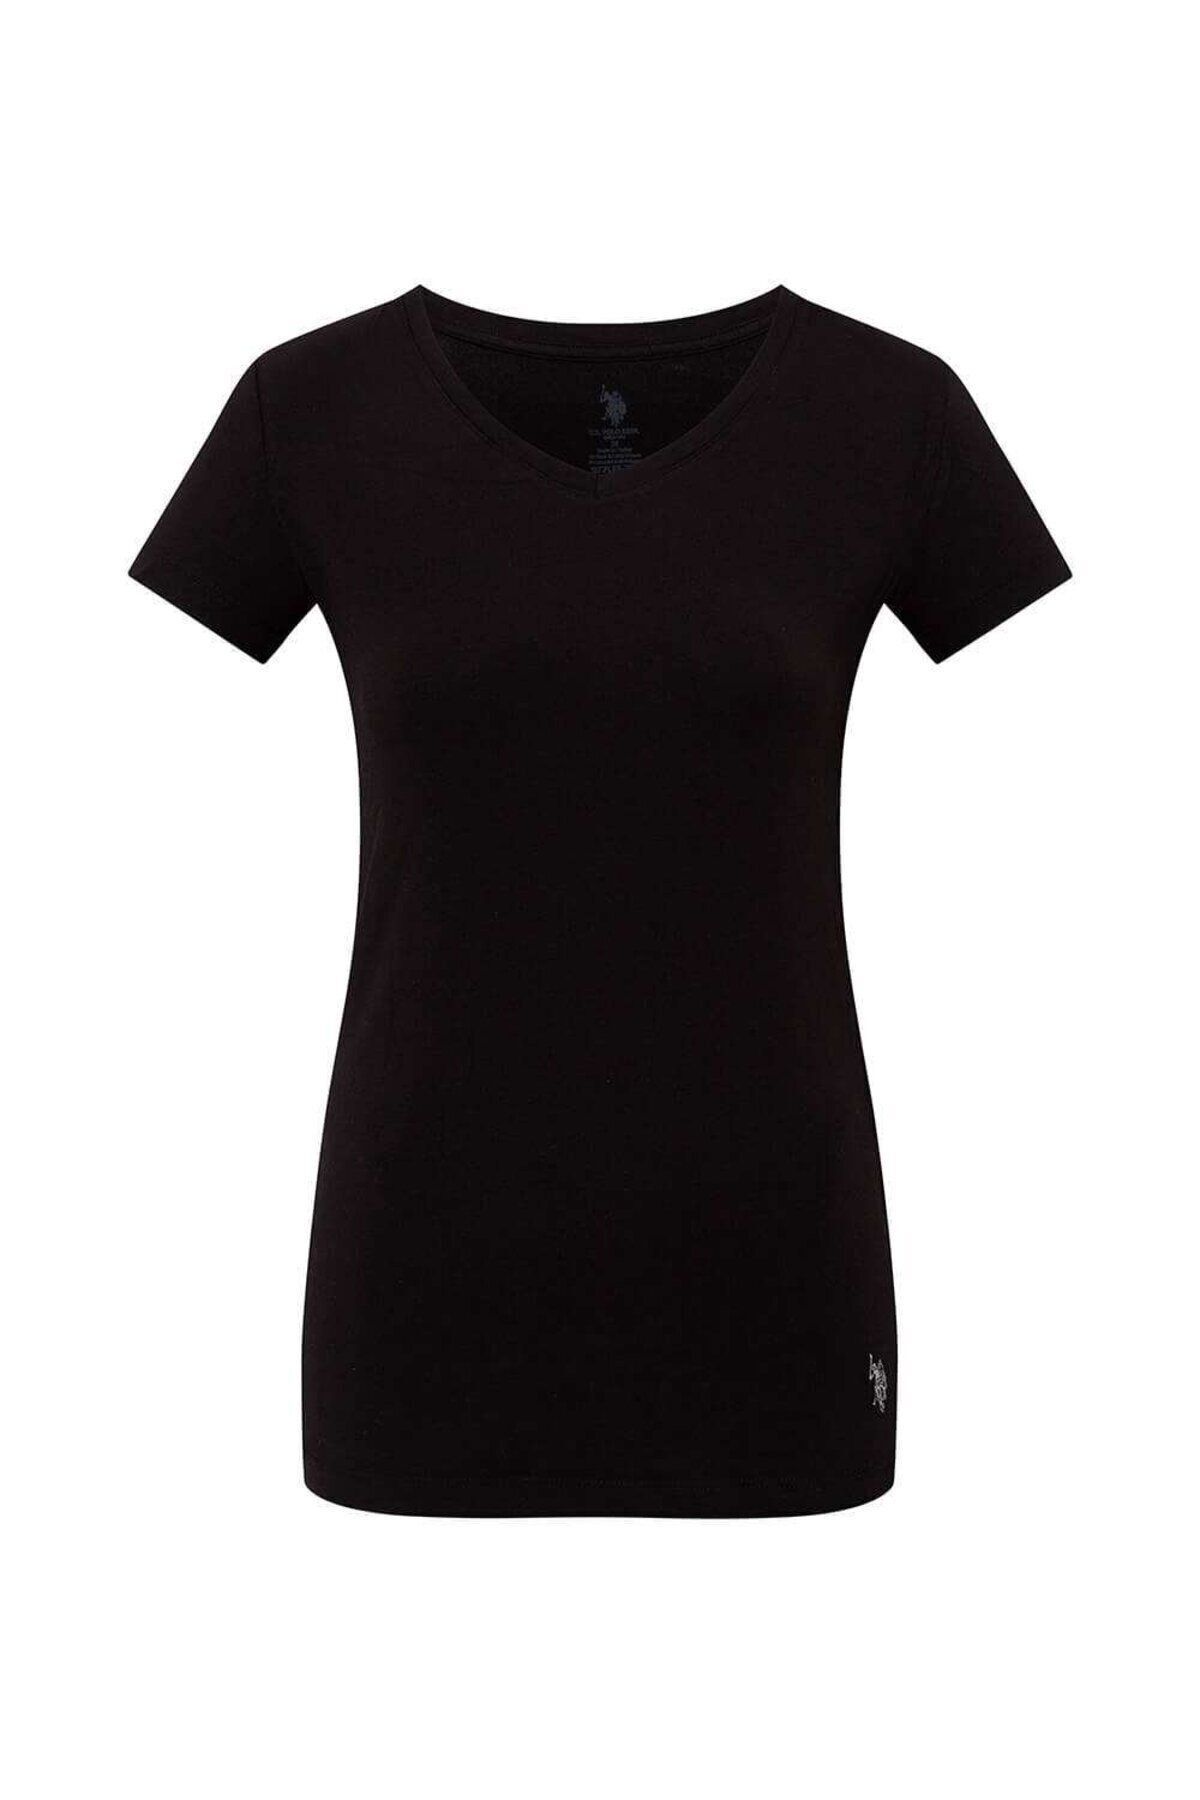 U.S. Polo Assn. Kadın Modal Pamuklu Basic V Yaka Siyah Kısa Kollu T-shirt